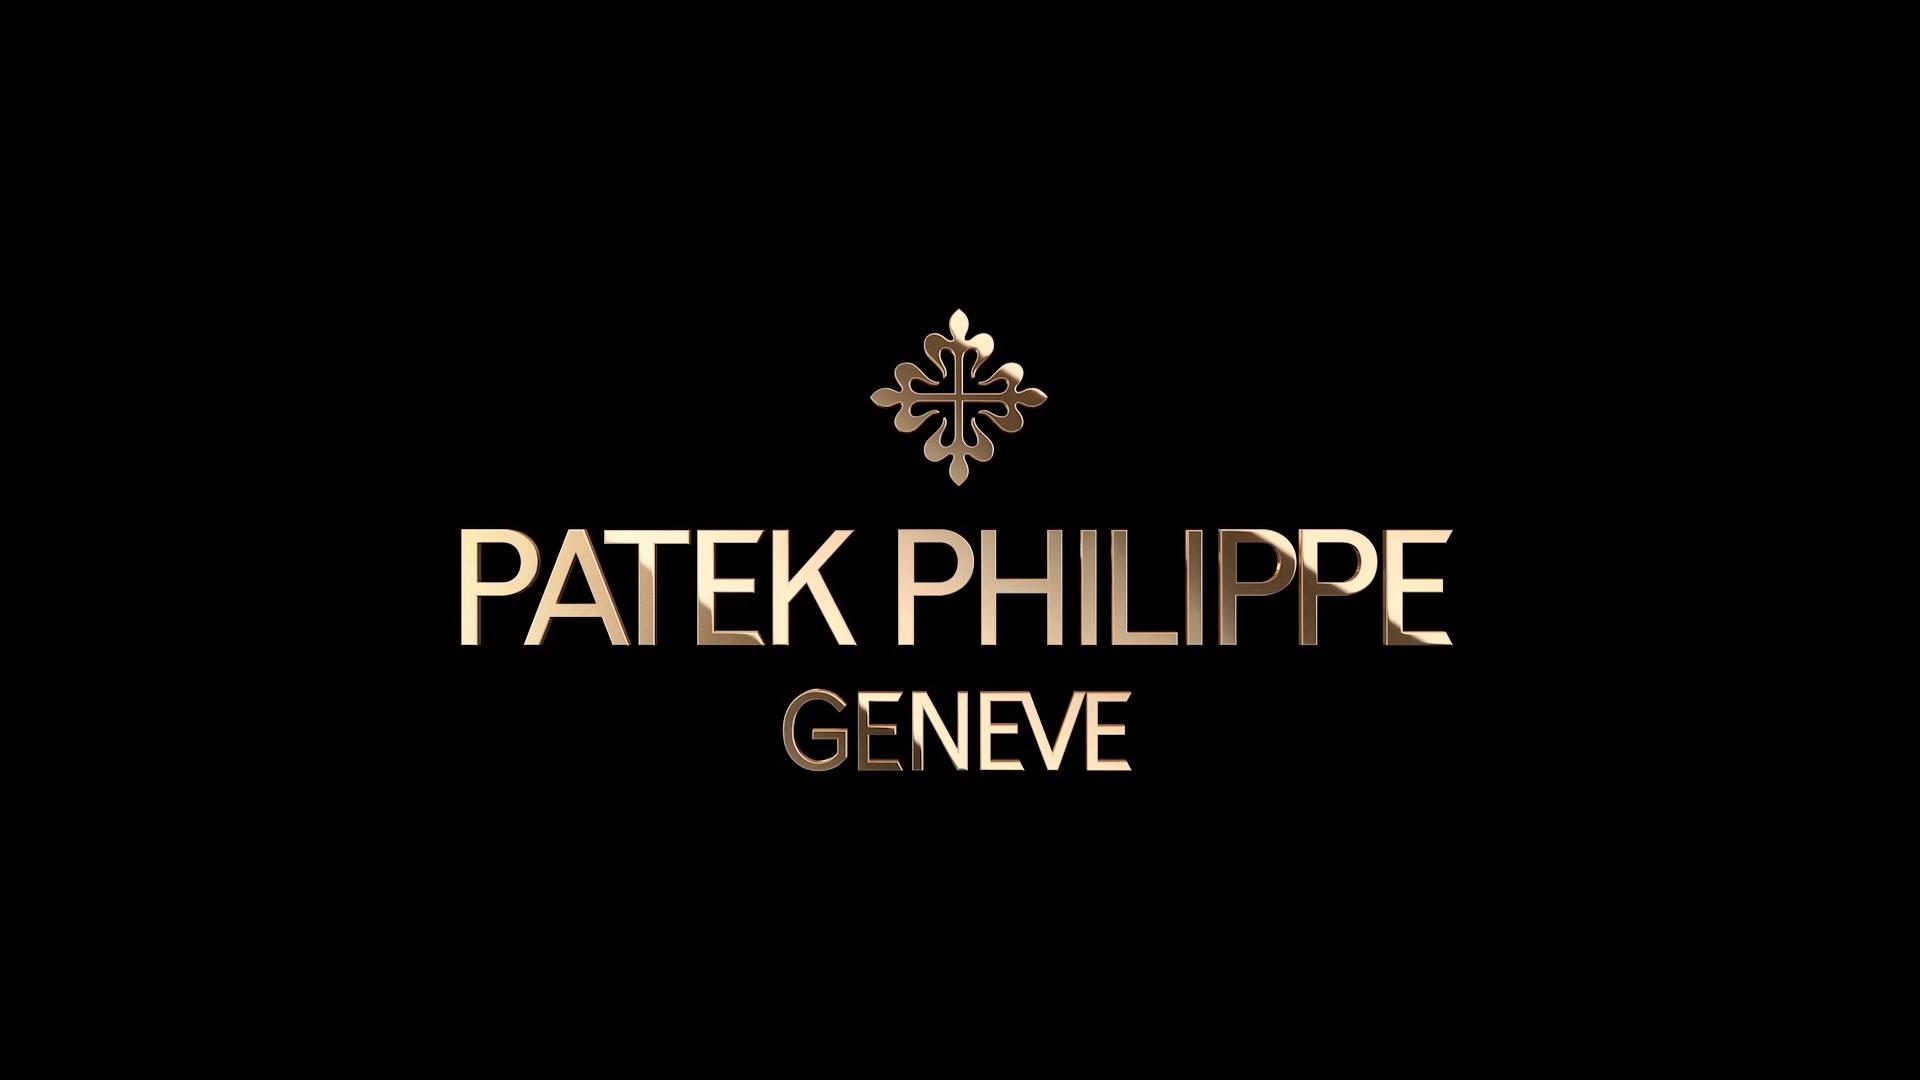 Patek Philippe Calatrava Ref. 4997/200R-001 Rose Gold